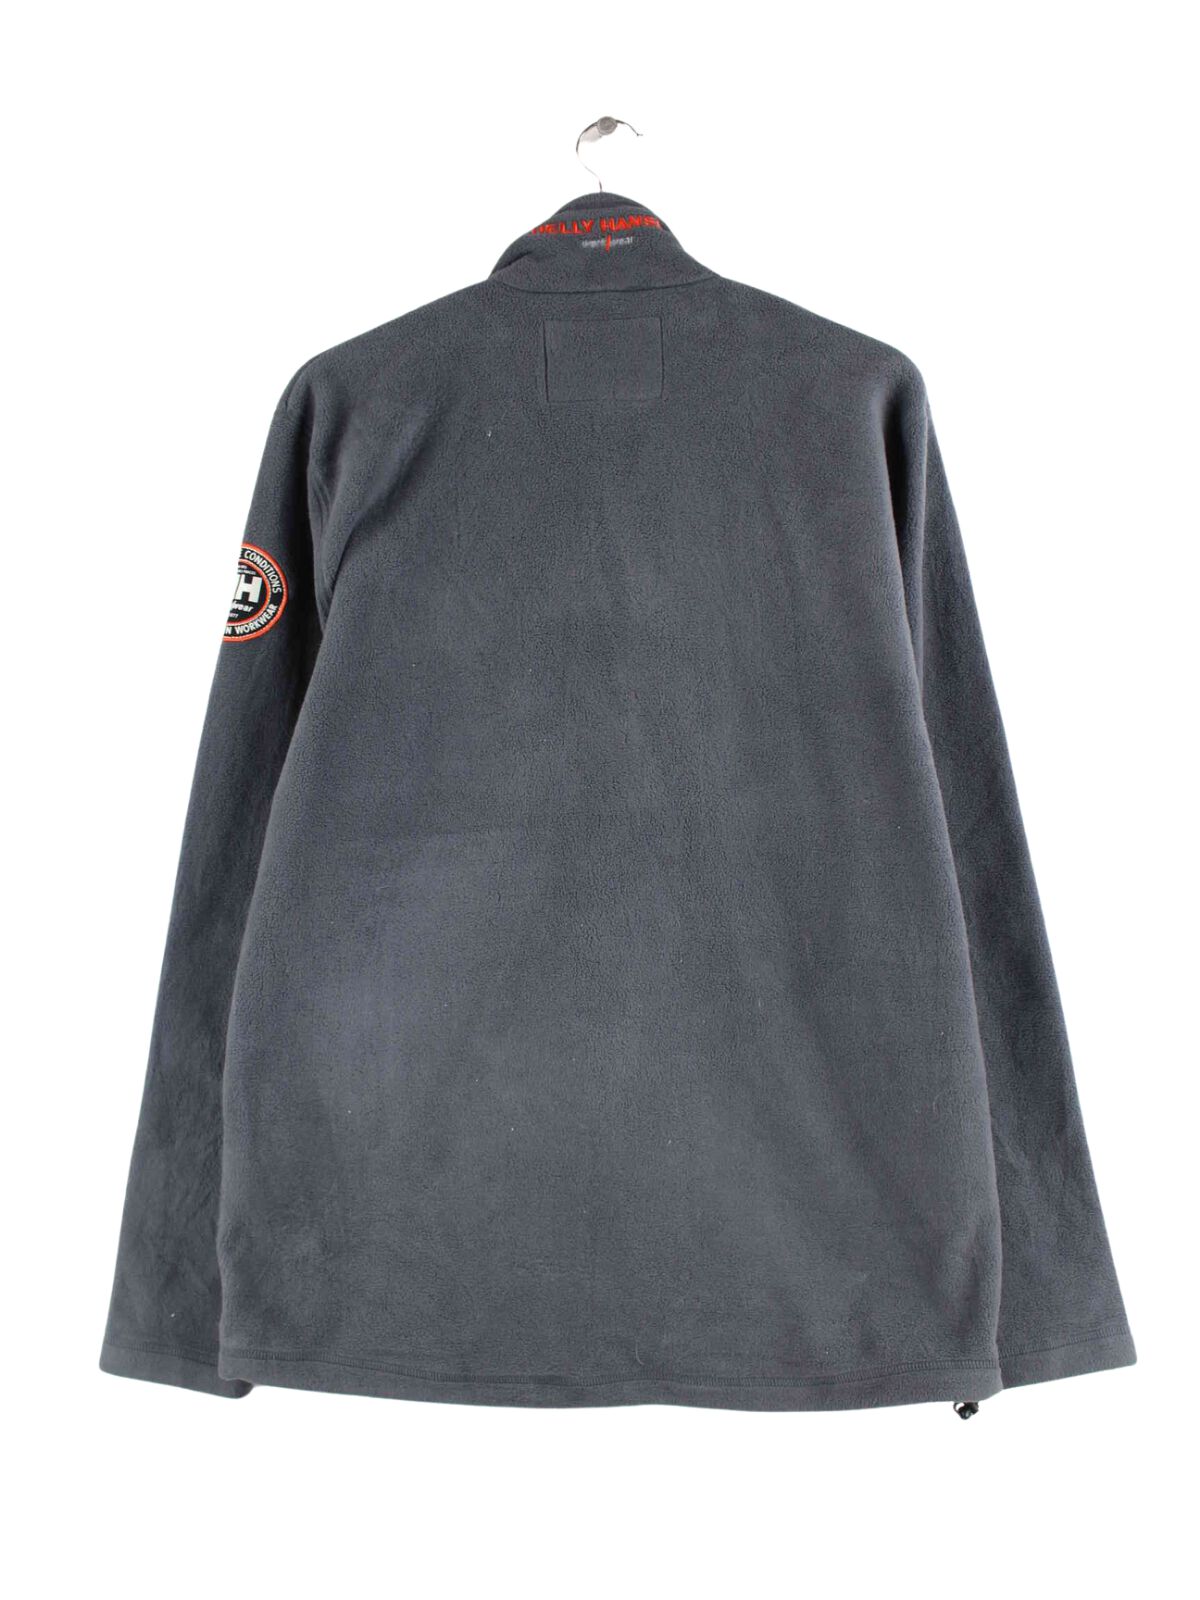 Helly Hansen Workwear Fleece Jacke Grau L (back image)